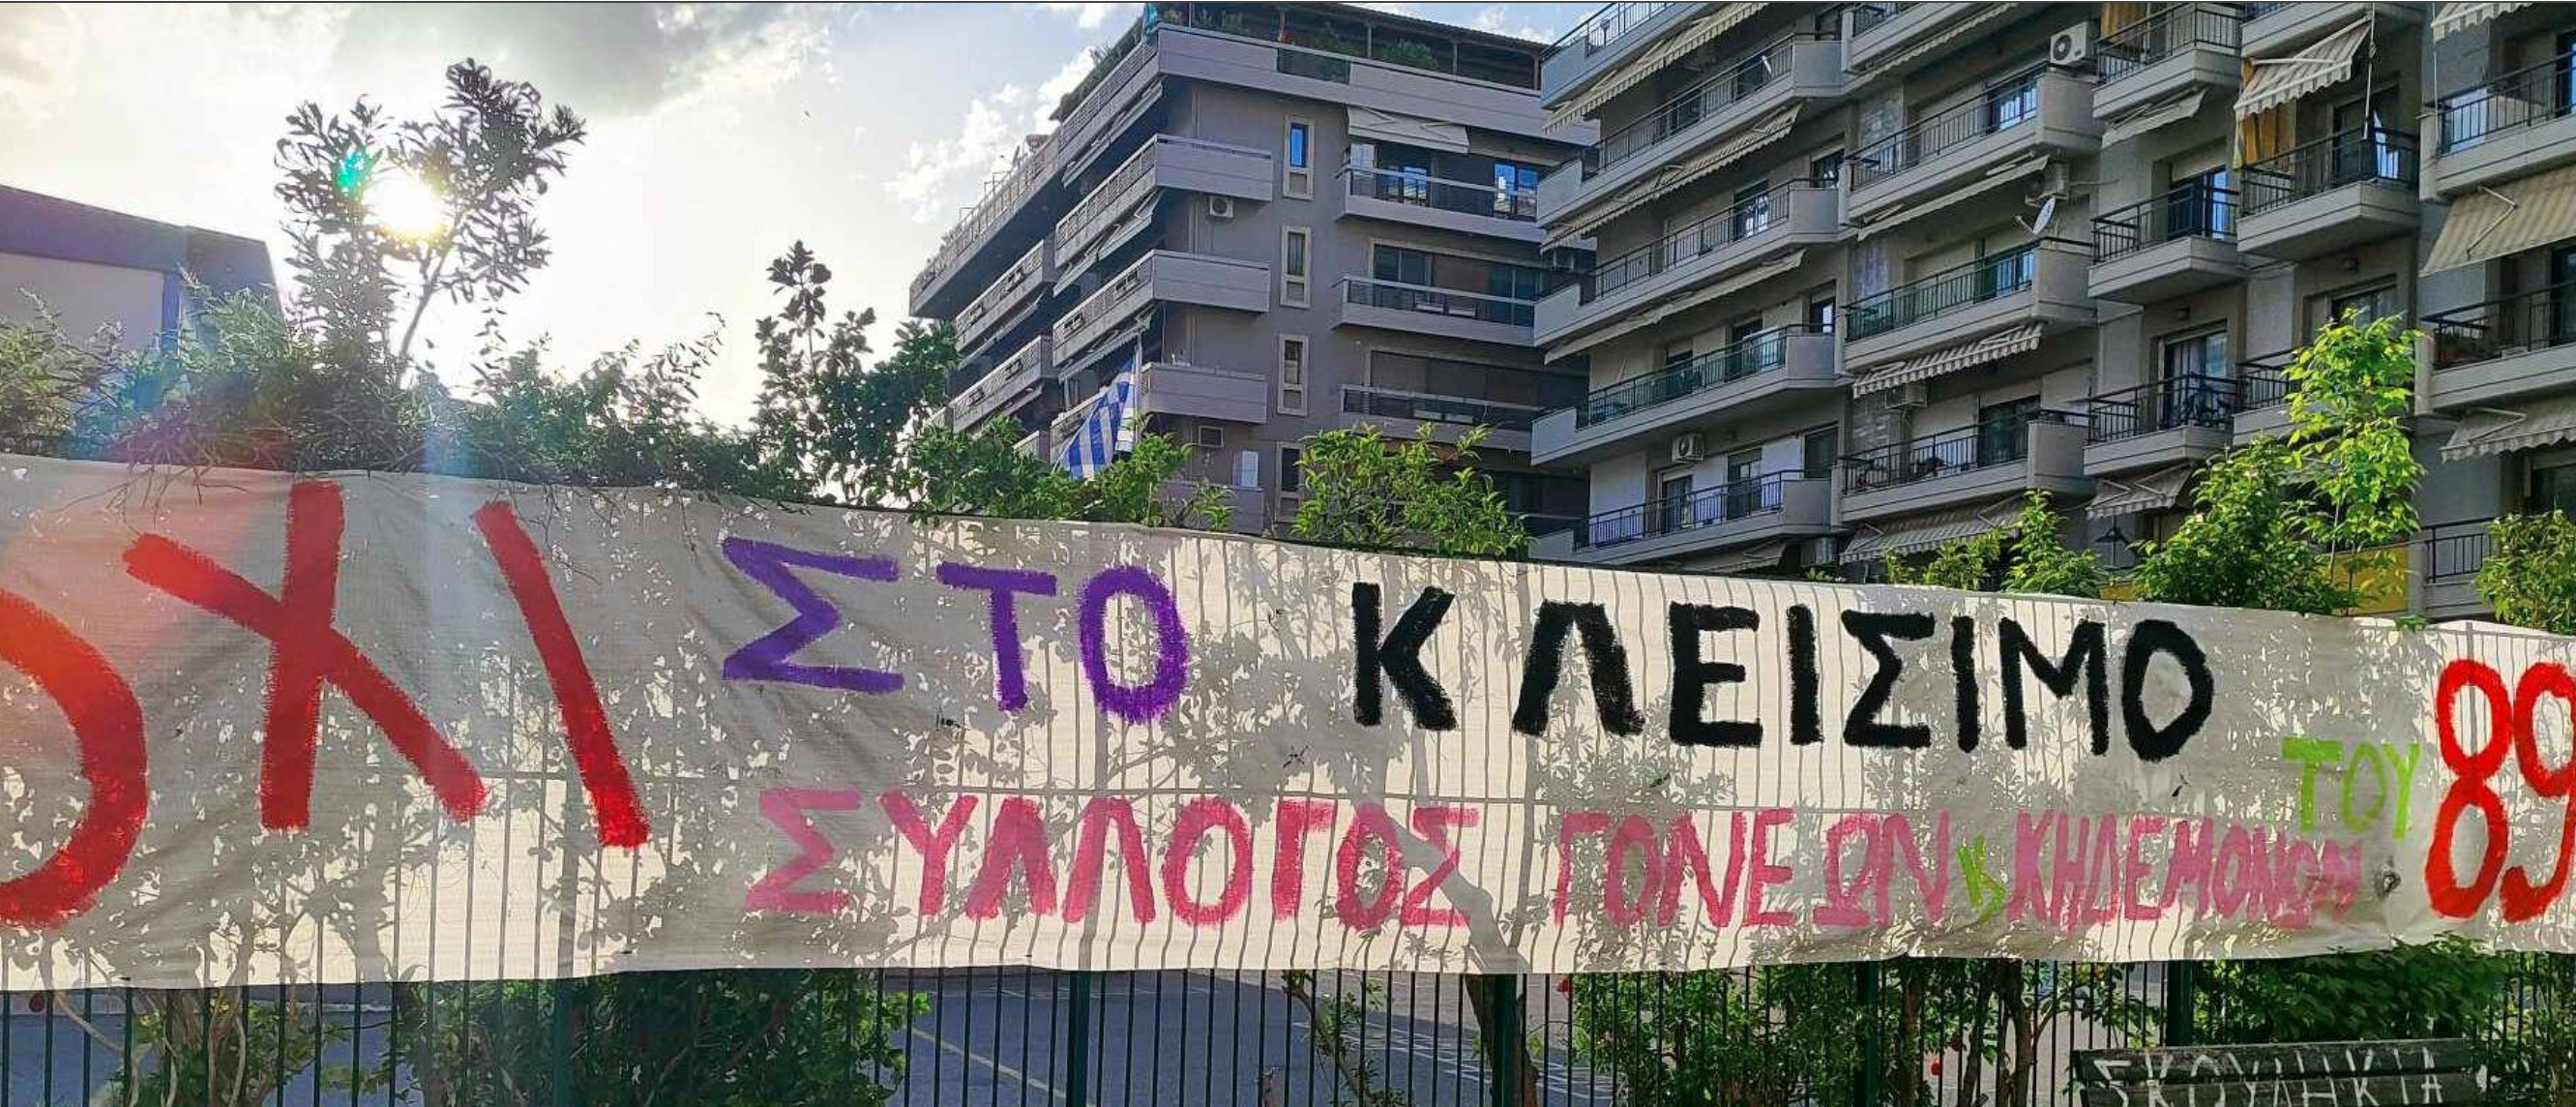 Θεσσαλονίκη:Συγκεντρώσεις για το 89ο Δημοτικό Σχολείο- Να μην κλείσει ζητούν οι γονείς